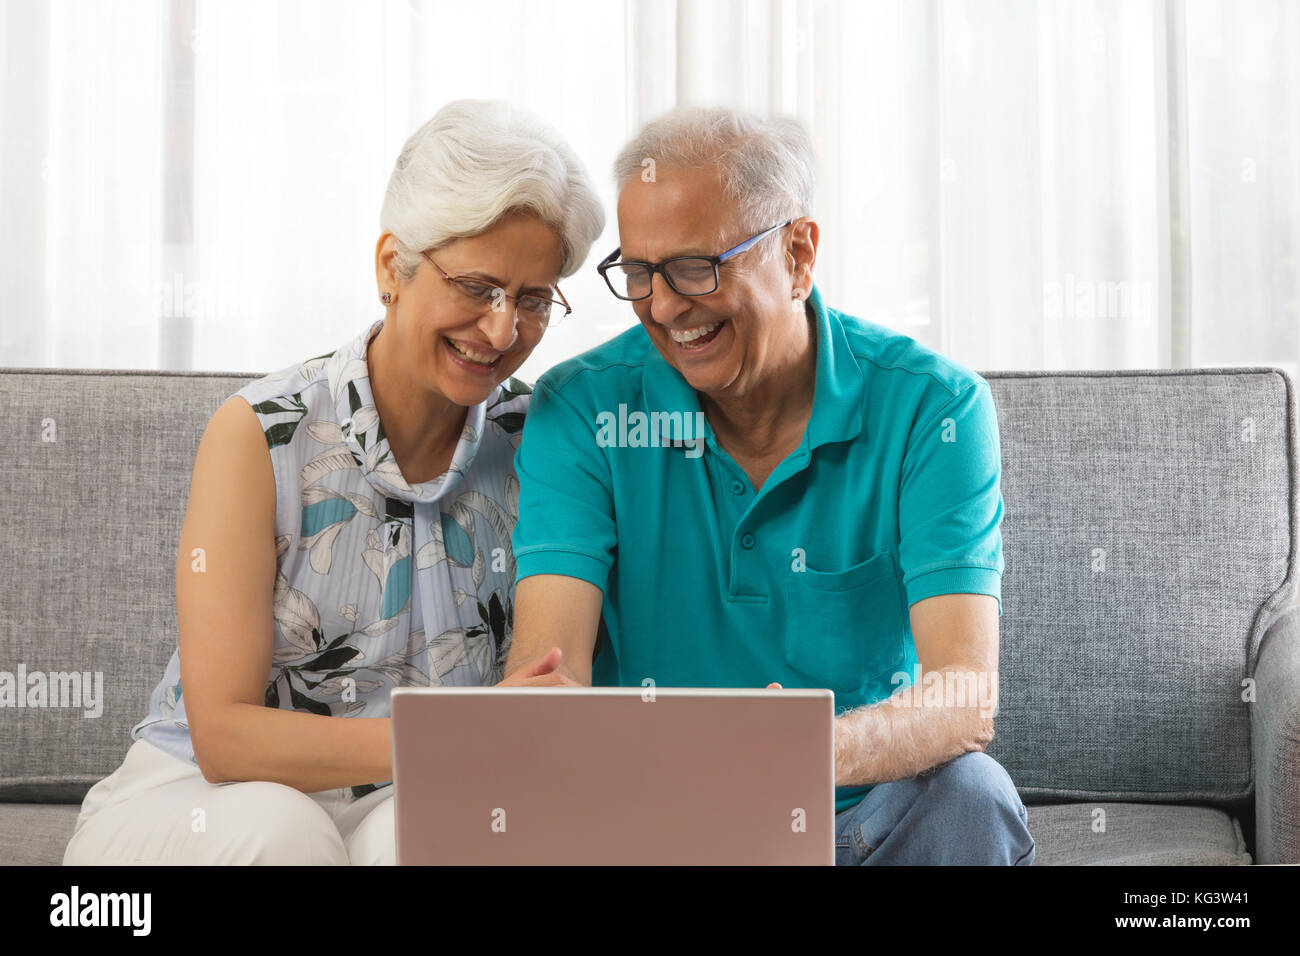 Happy senior couple using laptop sitting on sofa Stock Photo